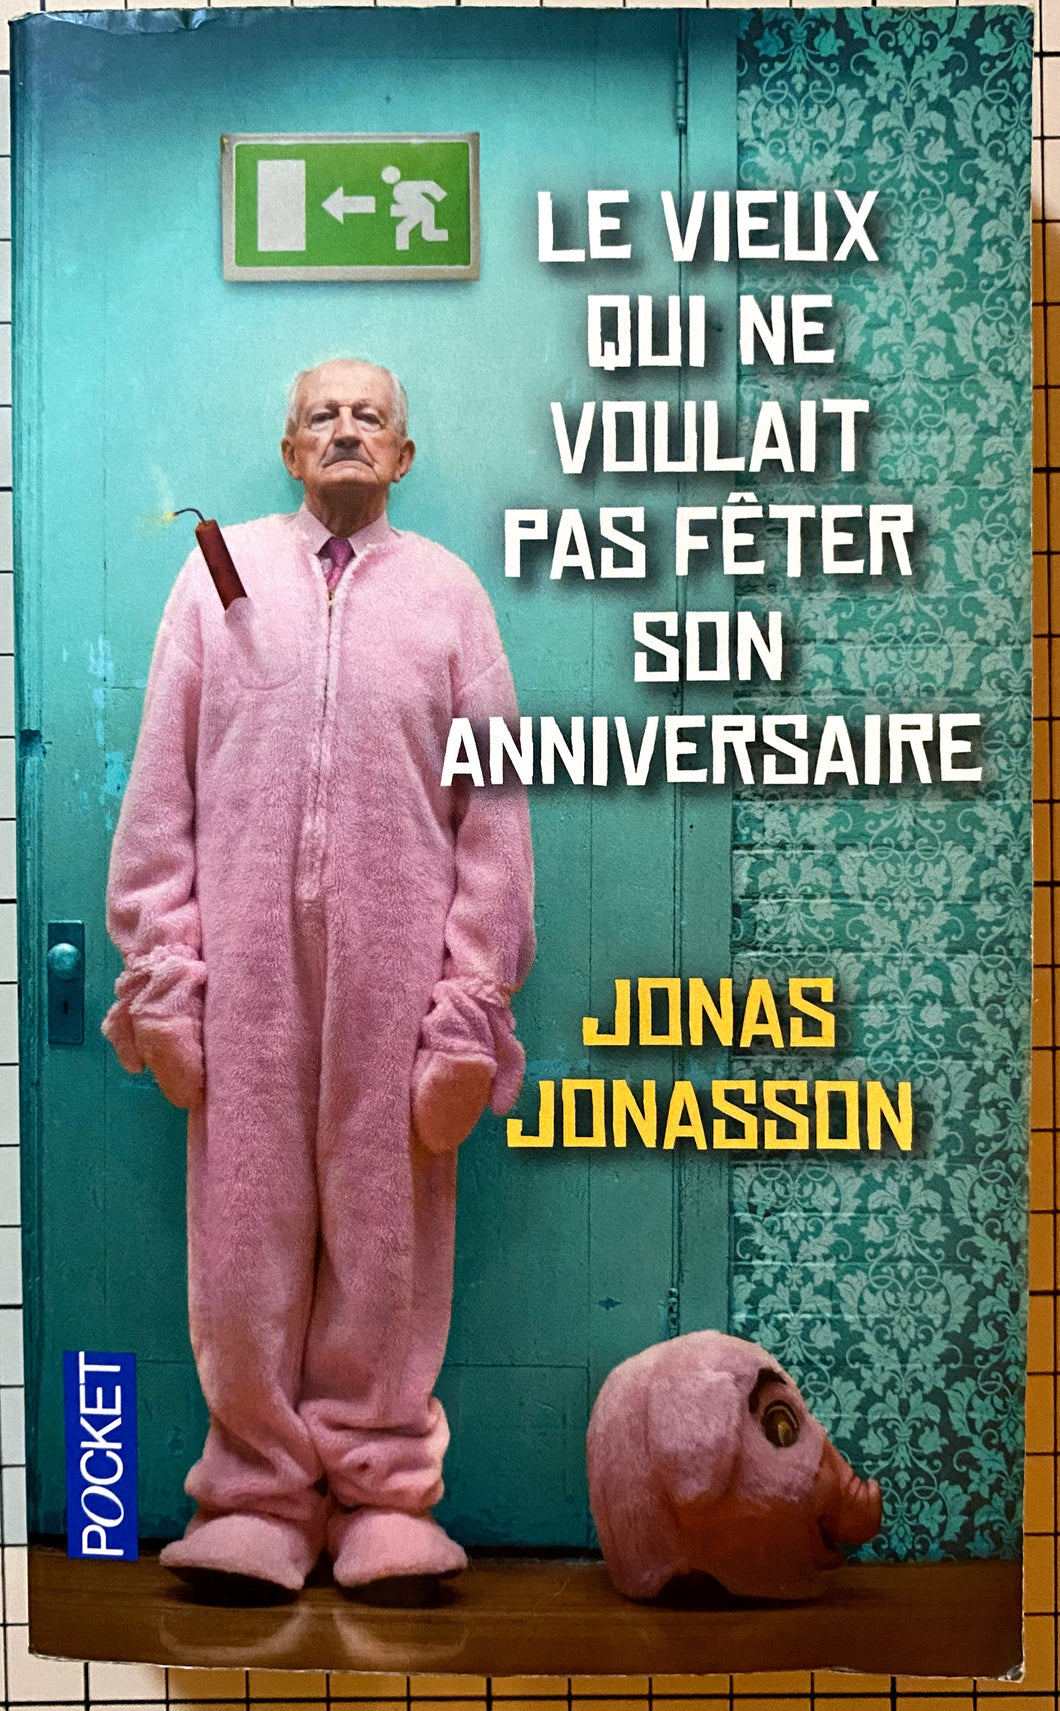 Le vieux qui ne voulait pas fêter son anniversaire : Jonas Jonasson